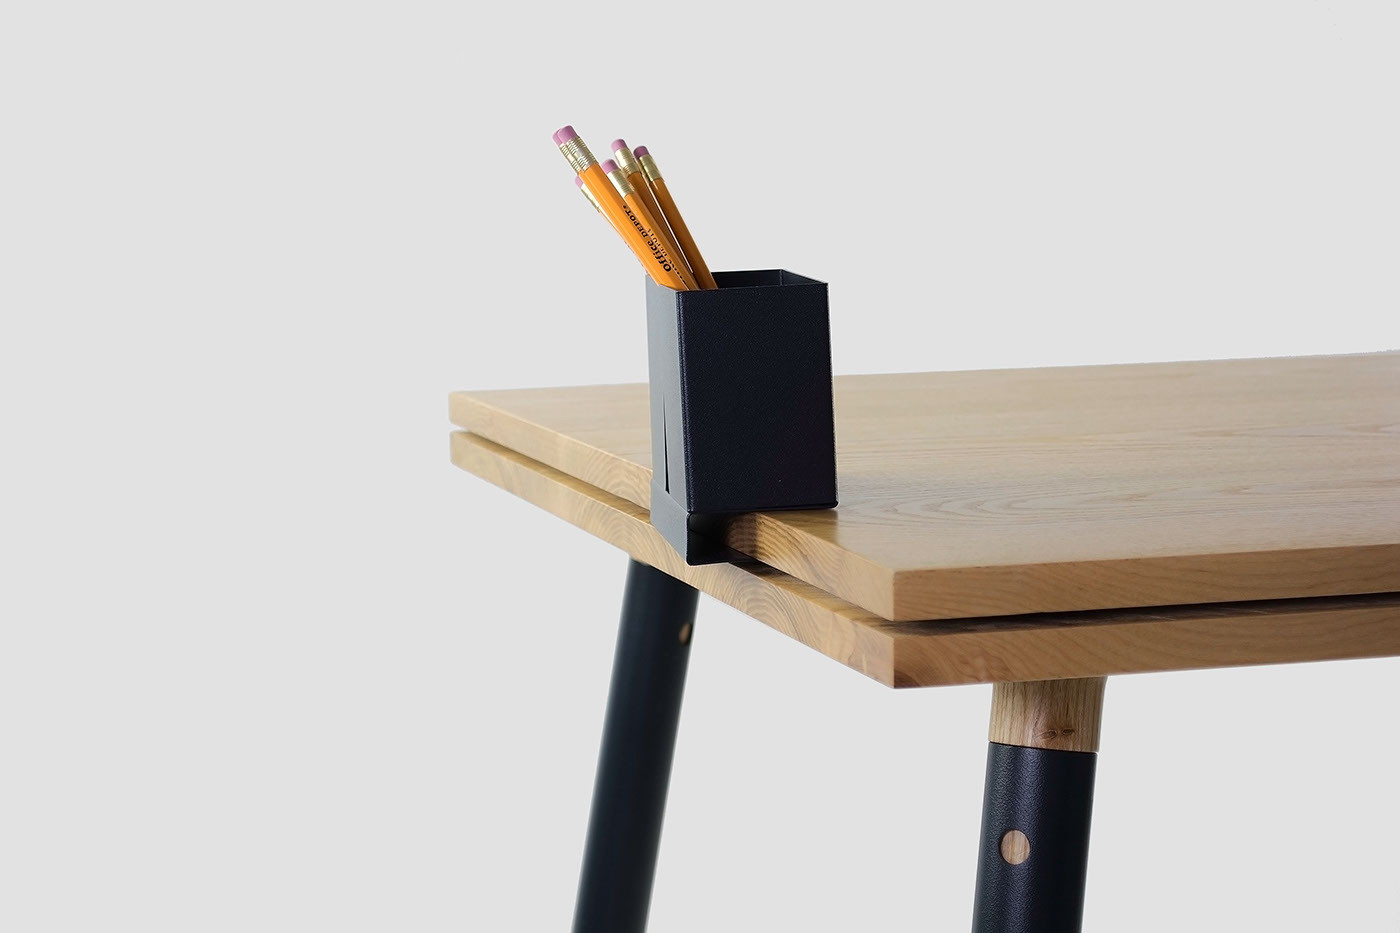 Chiếc bàn với phần mặt bàn có rãnh nhỏ chính giữa, tạo điều kiện cho chiếc hộp có thể được móc vào cố định.